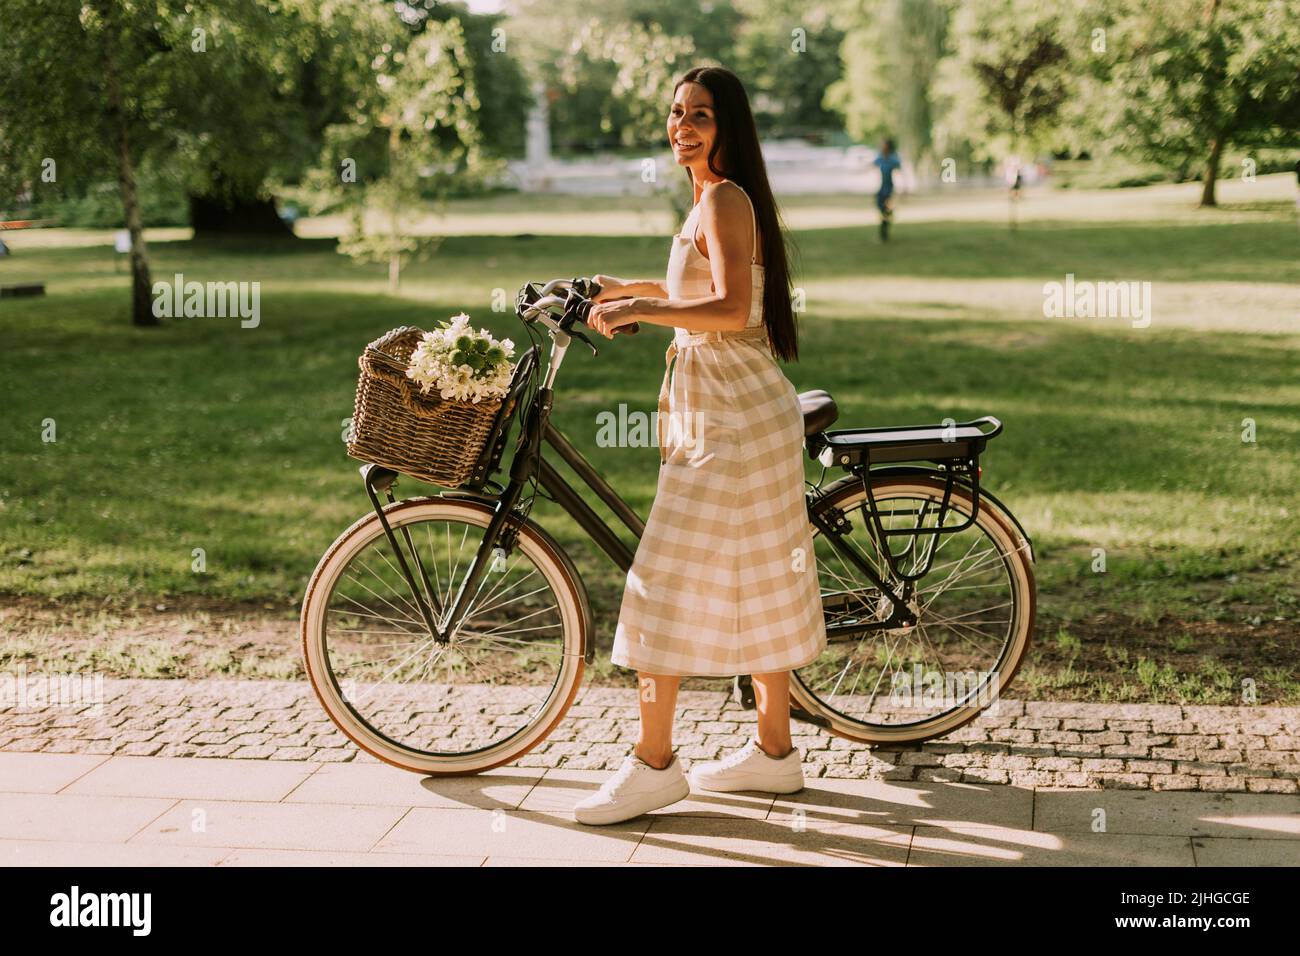 Hübsche junge Frau mit Blumen im Korb des Elektrofahrrads Stockfoto